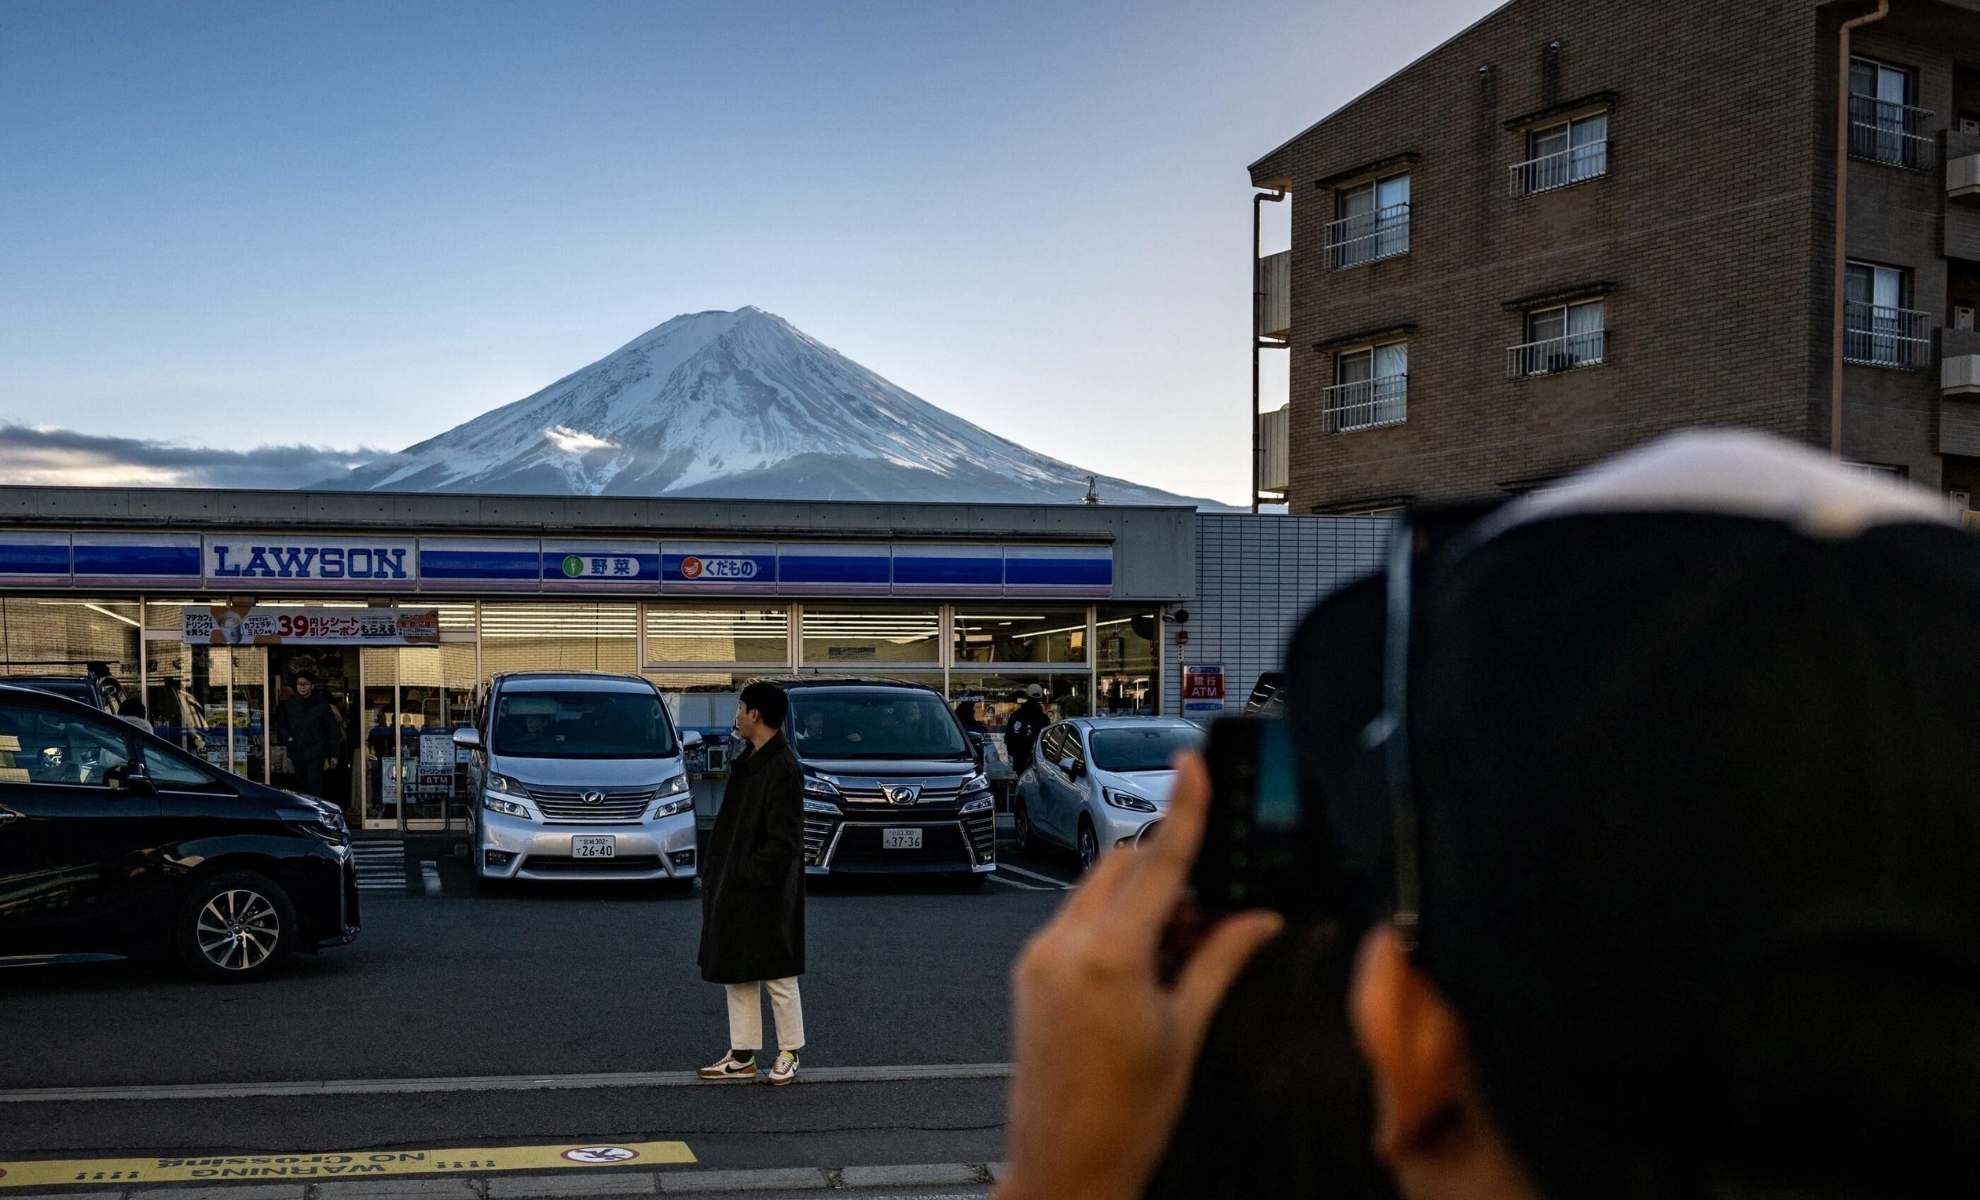 La supérette Lawson et vue sur le mont Fuji, Japon